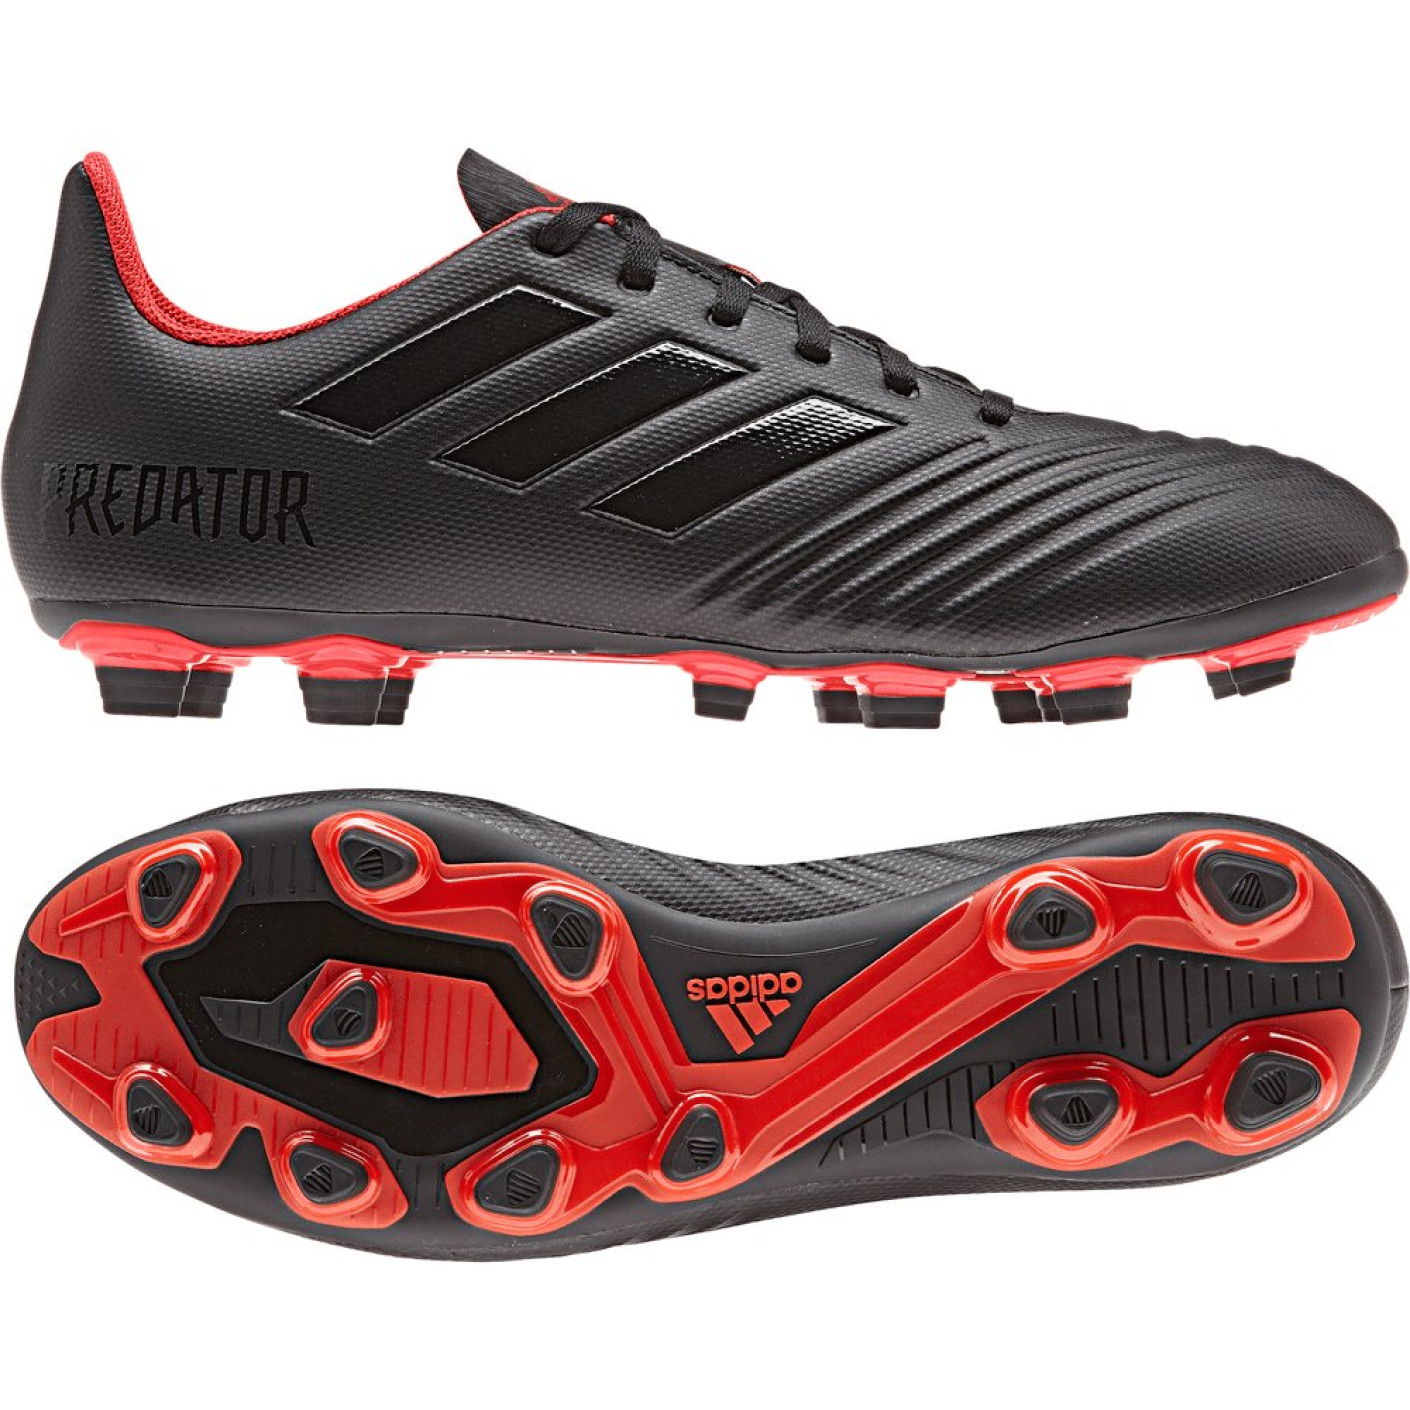 adidas PREDATOR 19.4 FxG Voetbalschoenen Zwart Rood